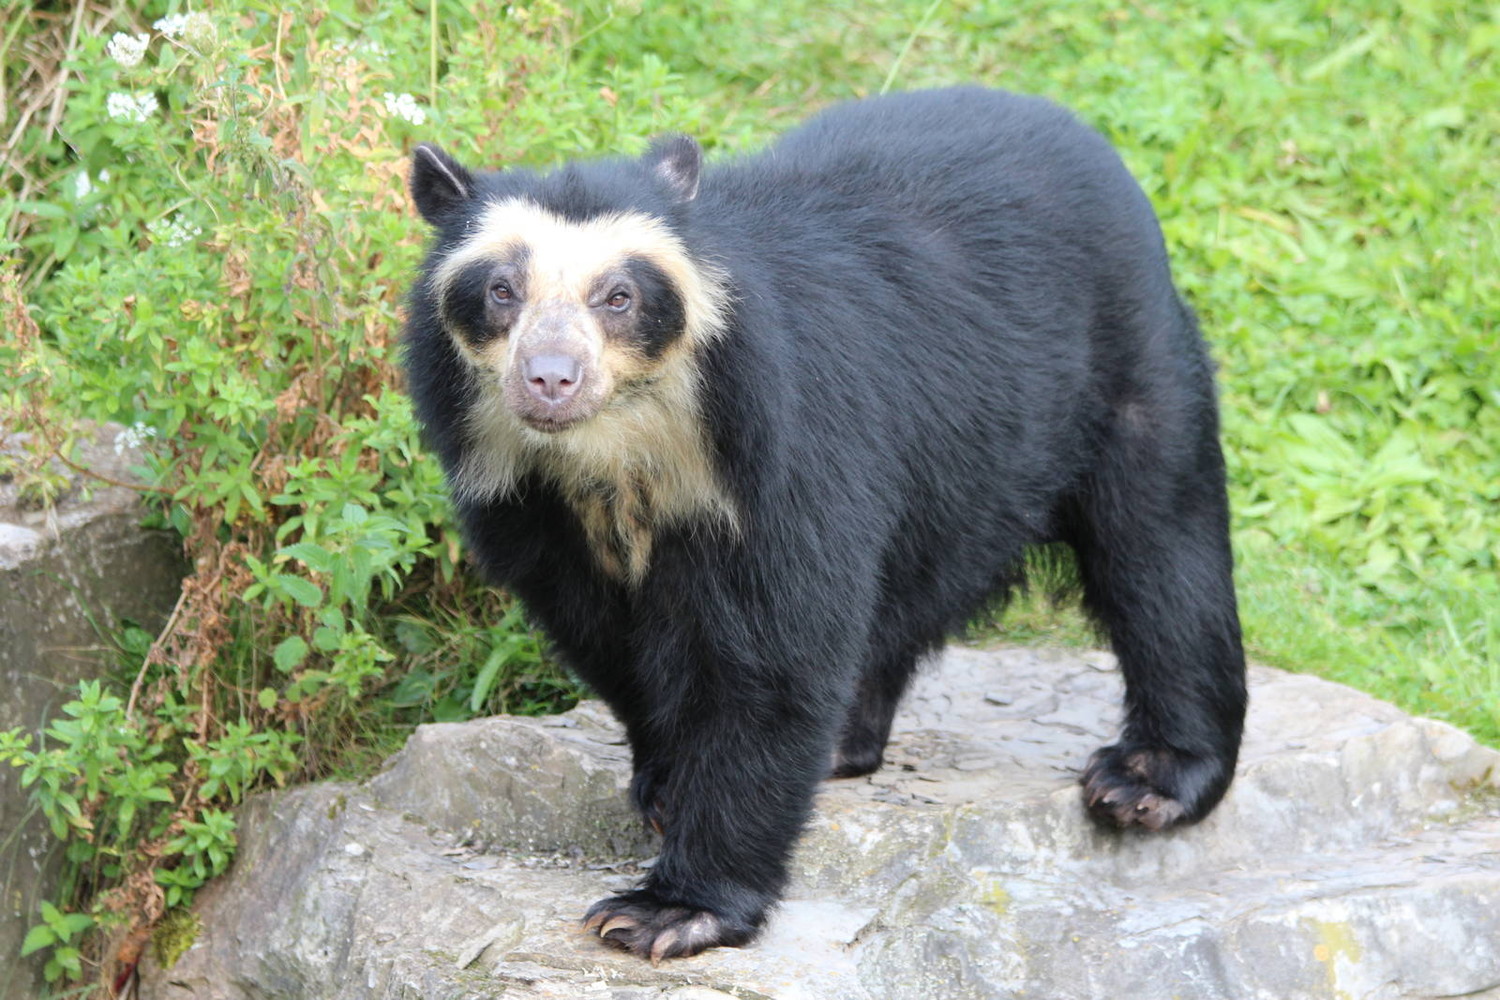 Очковый медведь, получивший это название за жёлтые круги вокруг глаз, остался только в высокогорных лесах